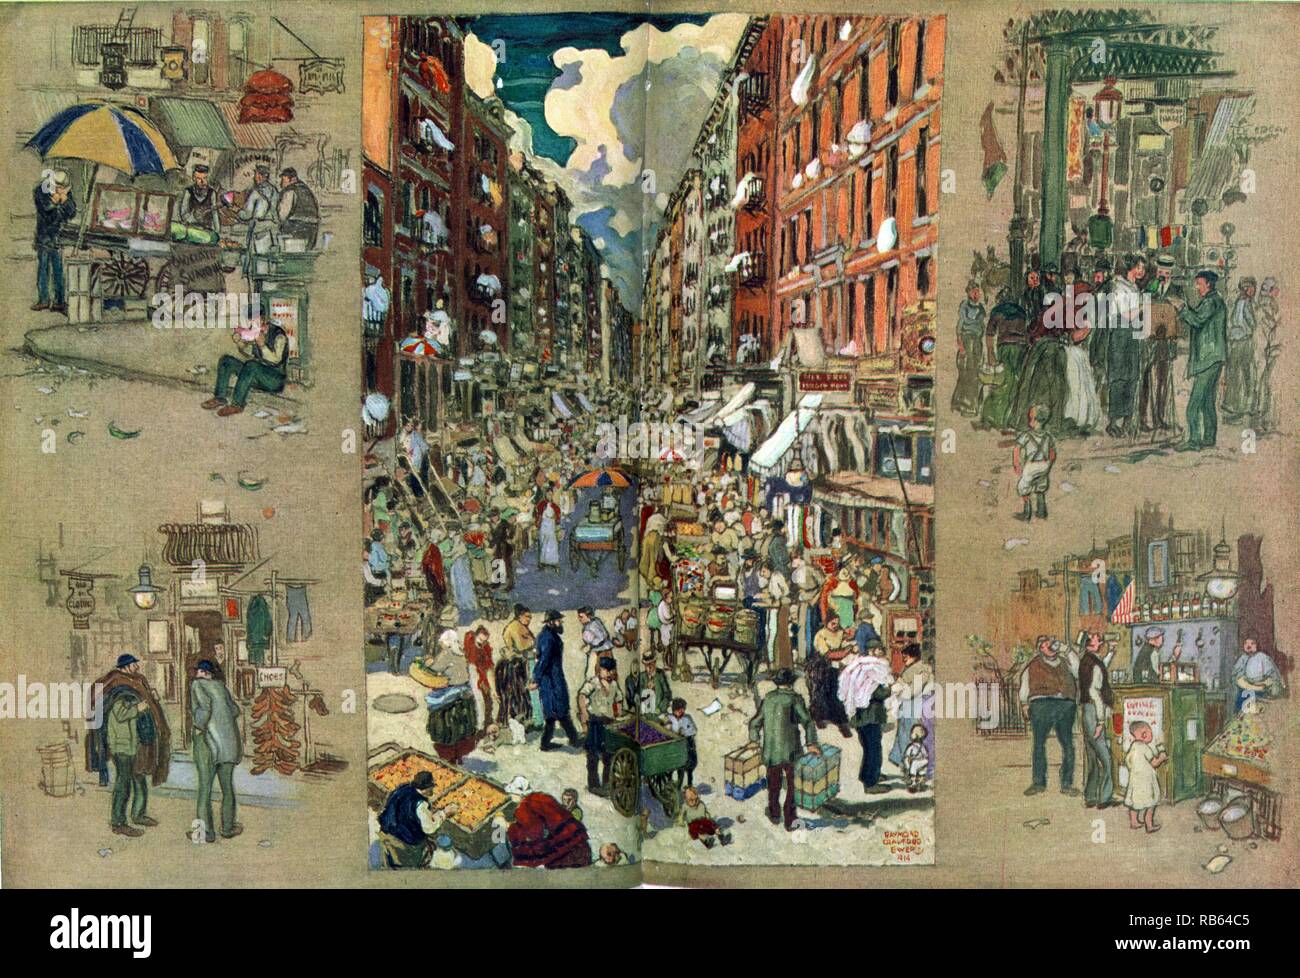 Giorni d'estate sull'East Side di New York da Raymond Crawford Ewer 1914;dipinto rappresenta una strada affollata tra tenement edifici, con i venditori ambulanti di rivestimento del street, anche viste vignette di vetrine, fornitori e una riunione sociale su un angolo di strada, eventualmente attorno ad un fotografo. Foto Stock